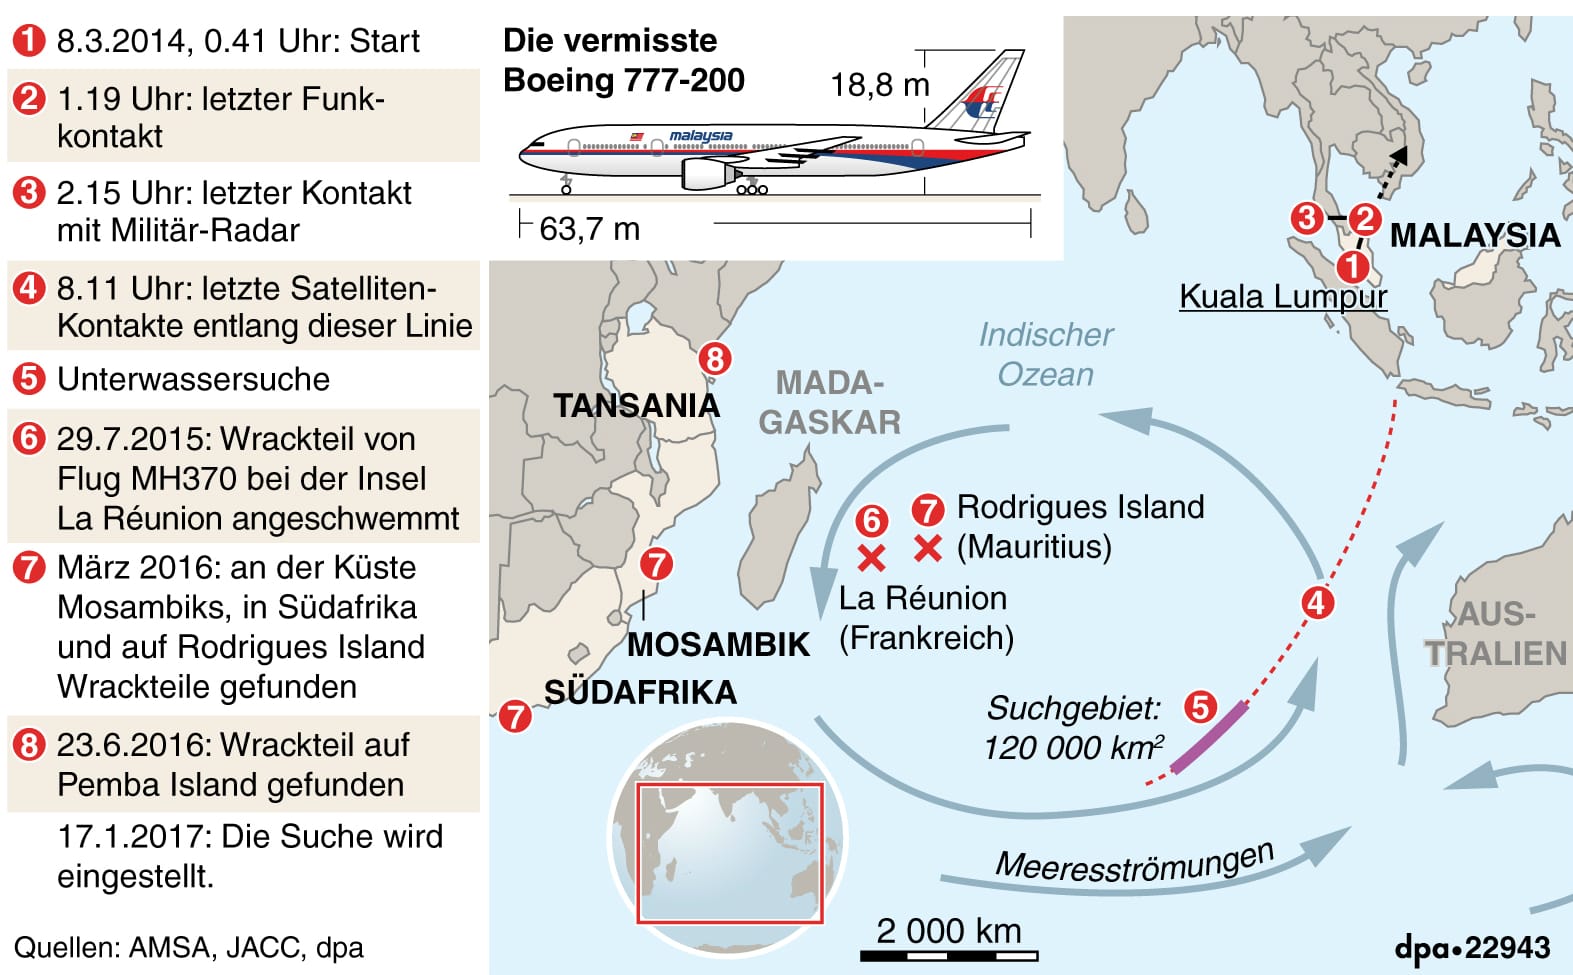 2017 wurde die Suche nach MH370 offiziell beendet. Nun sucht ein Privatunternehmen nach dem Wrack.